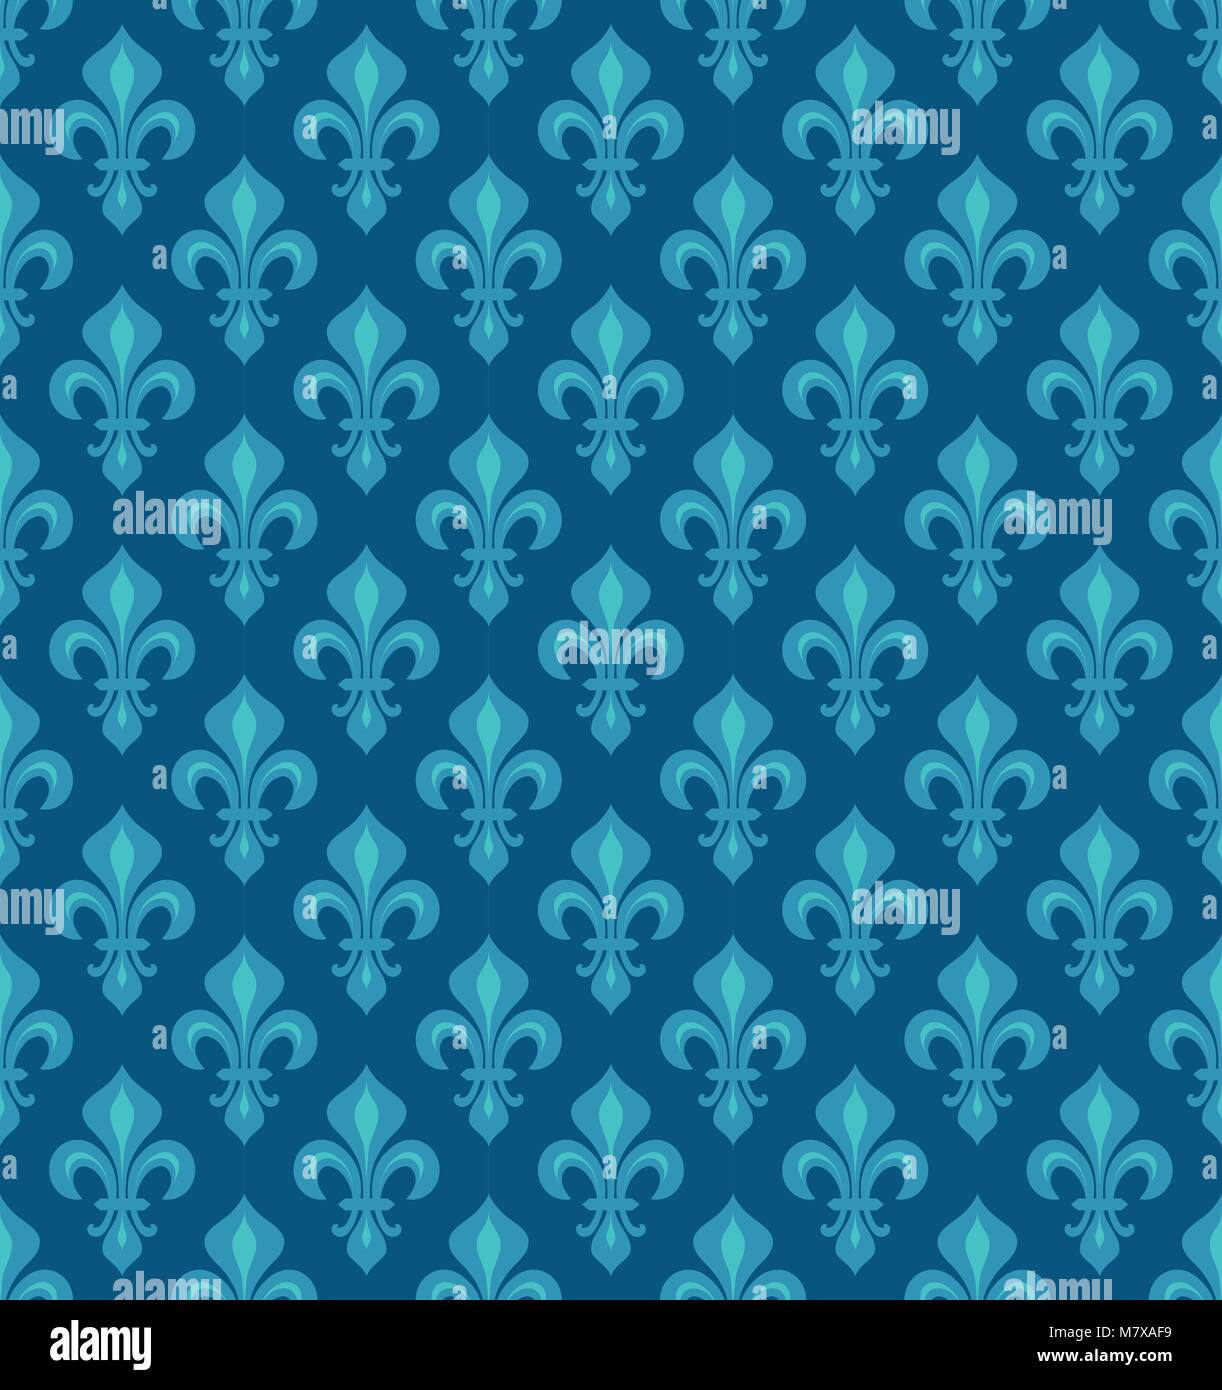 Royal gigli araldici (Fleur de Lis) - cerulean azzurro cielo blu velluto, seamless pattern, sfondo. Illustrazione Vettoriale